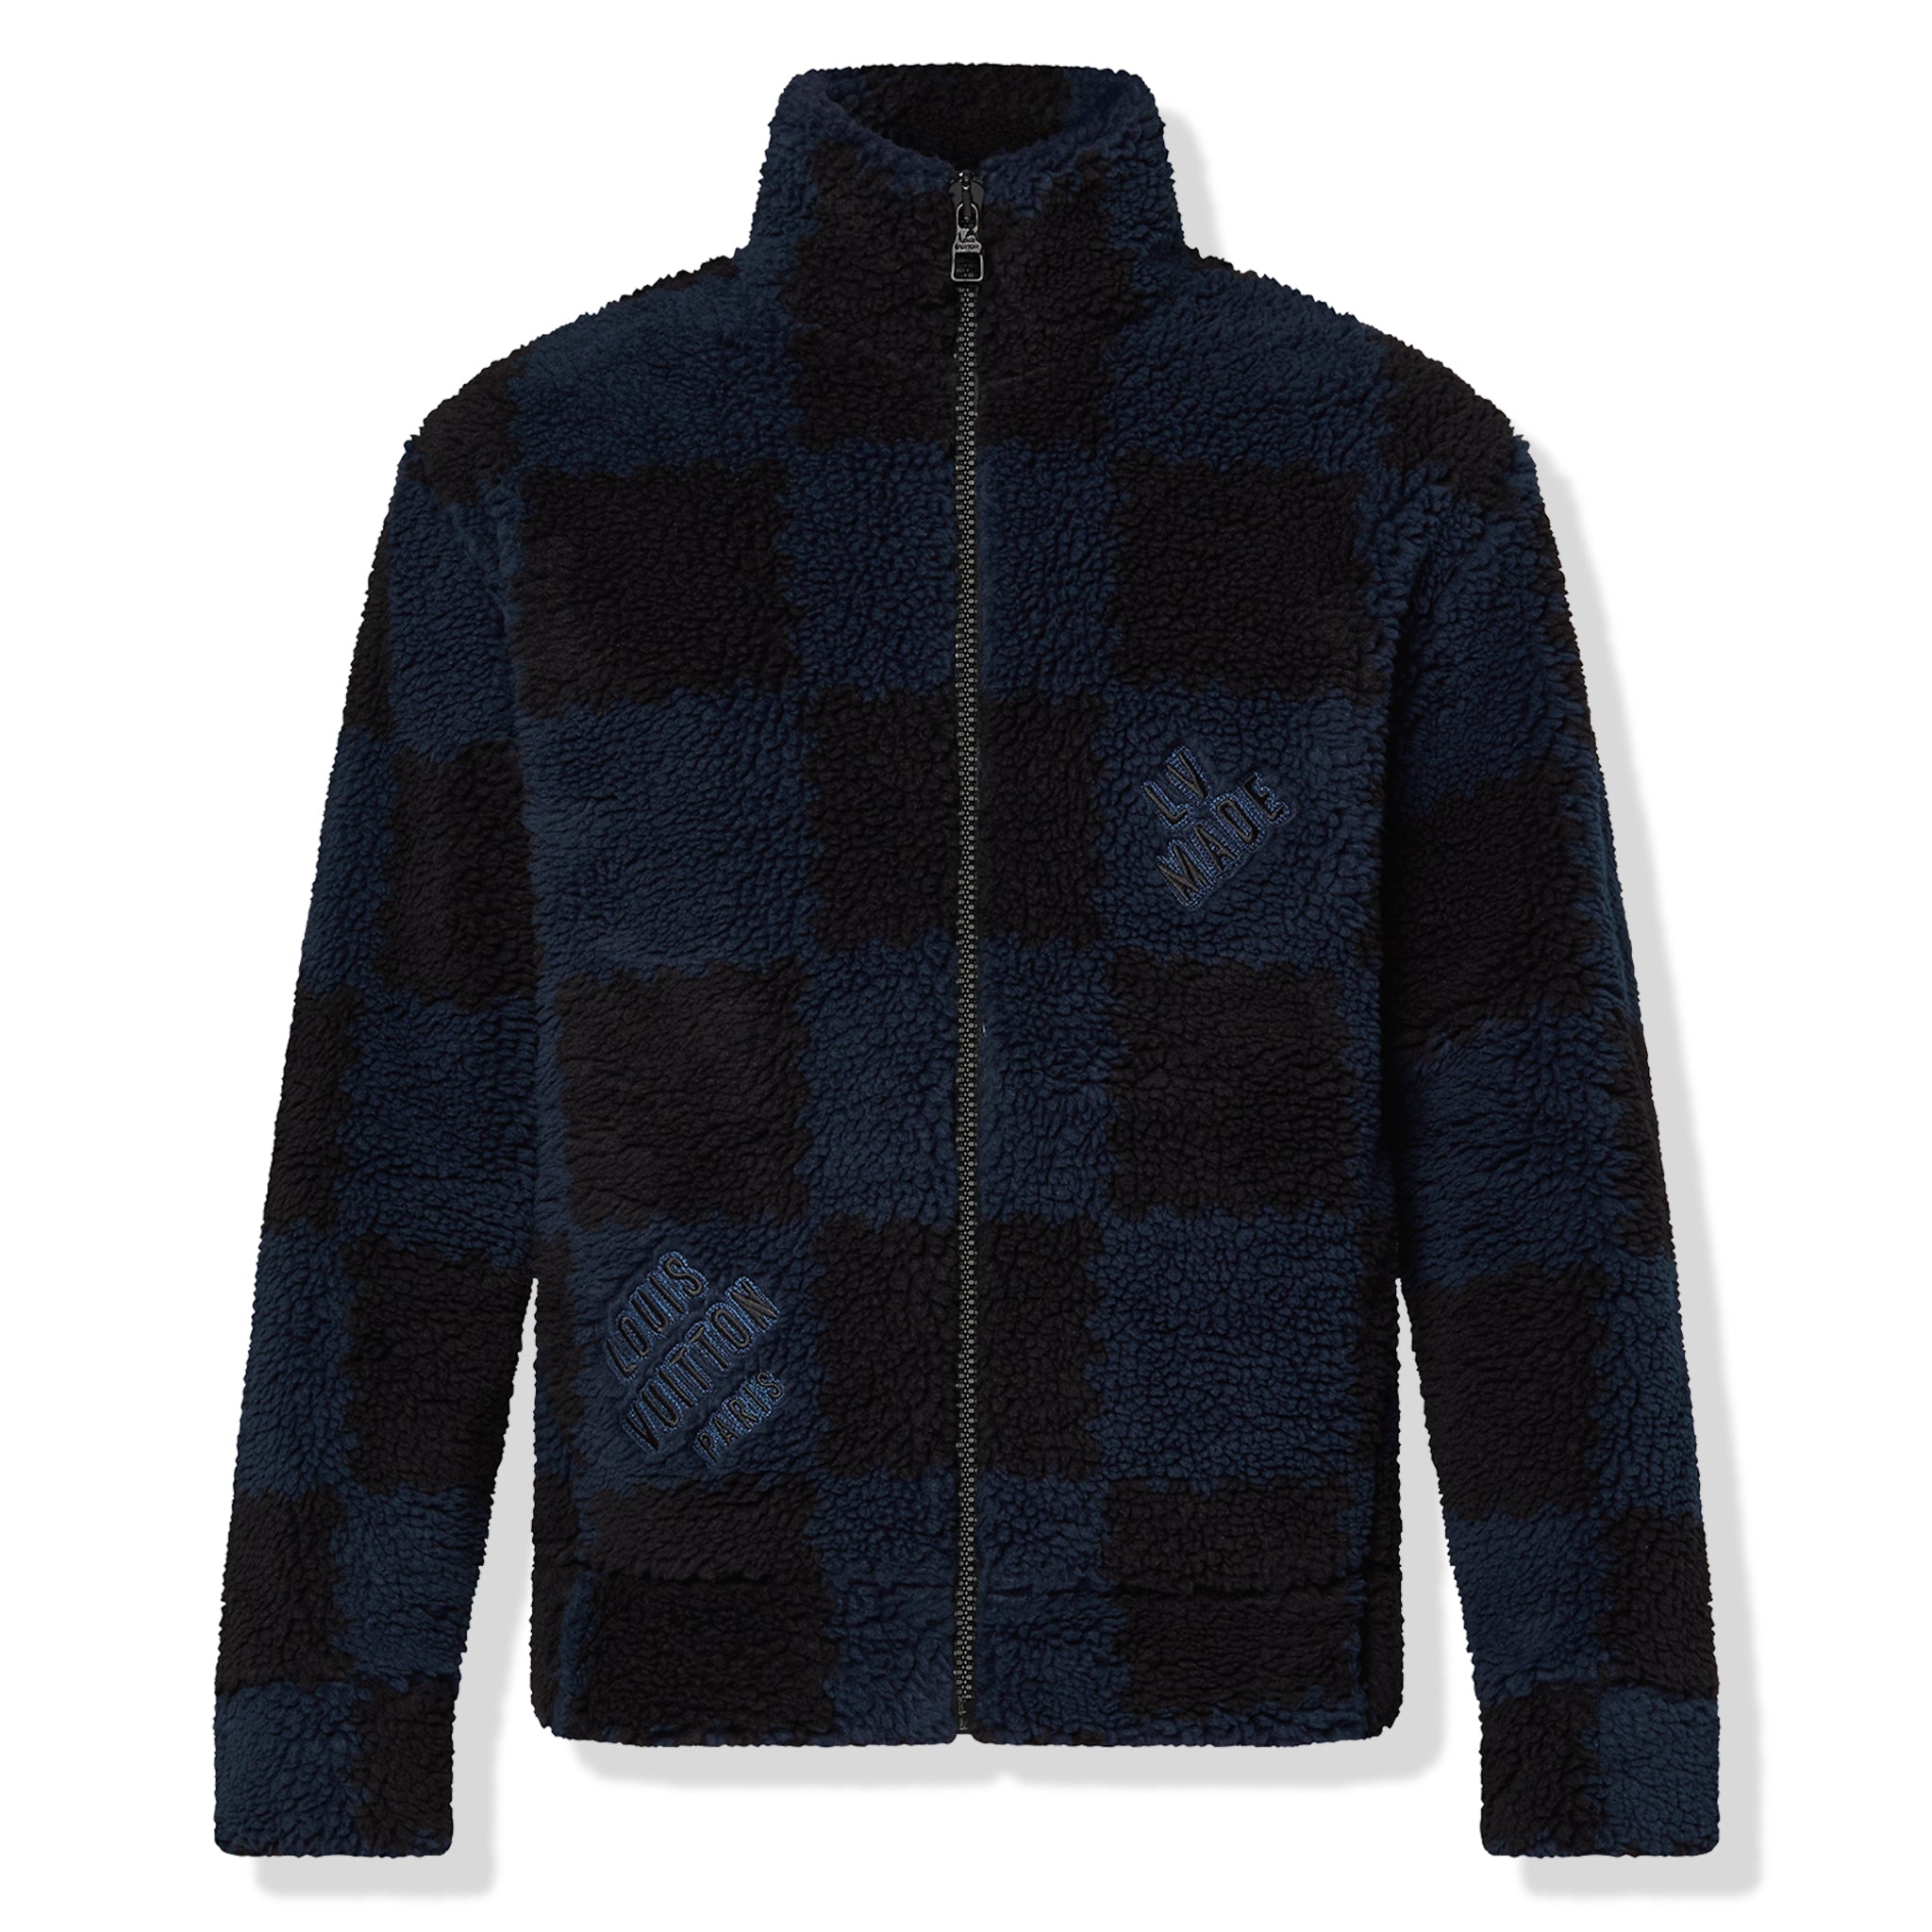 Louis Vuitton, Jackets & Coats, Louis Vuitton X Nigo Denim Jacket Noir  Perfect Condition